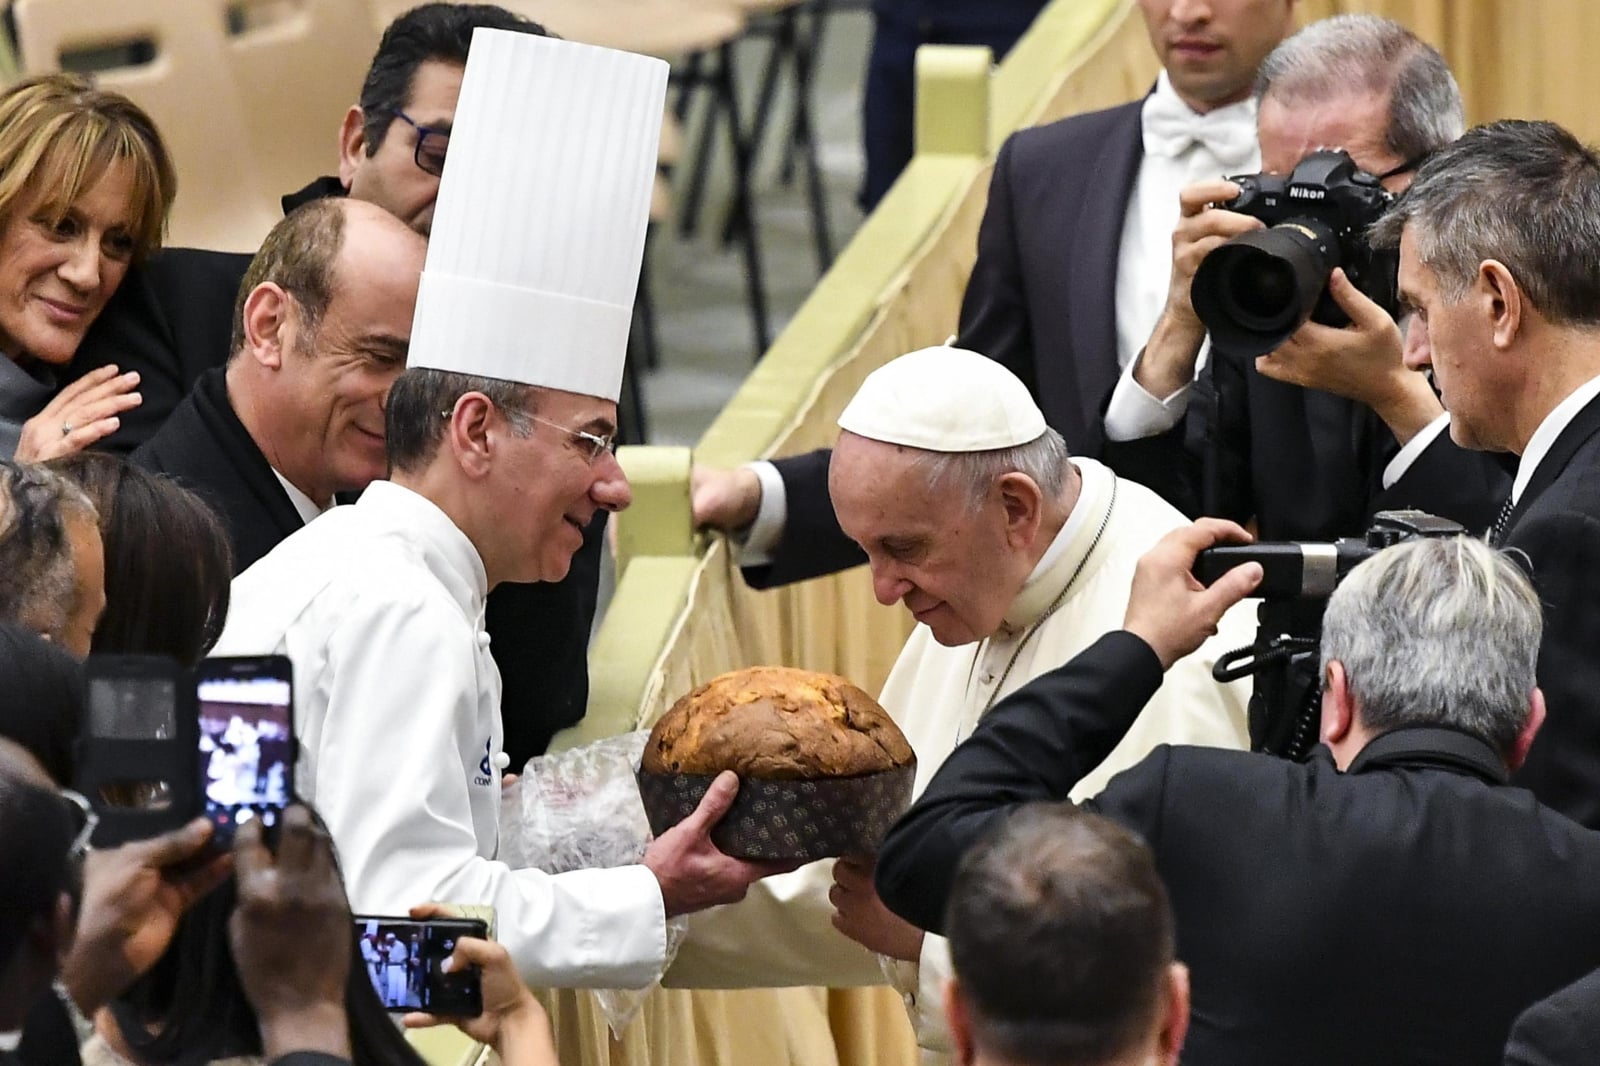 Papież Franciszek wącha Panettone, tradycyjne świąteczne ciasto. Fot. EPA/ANGELO CARCONI